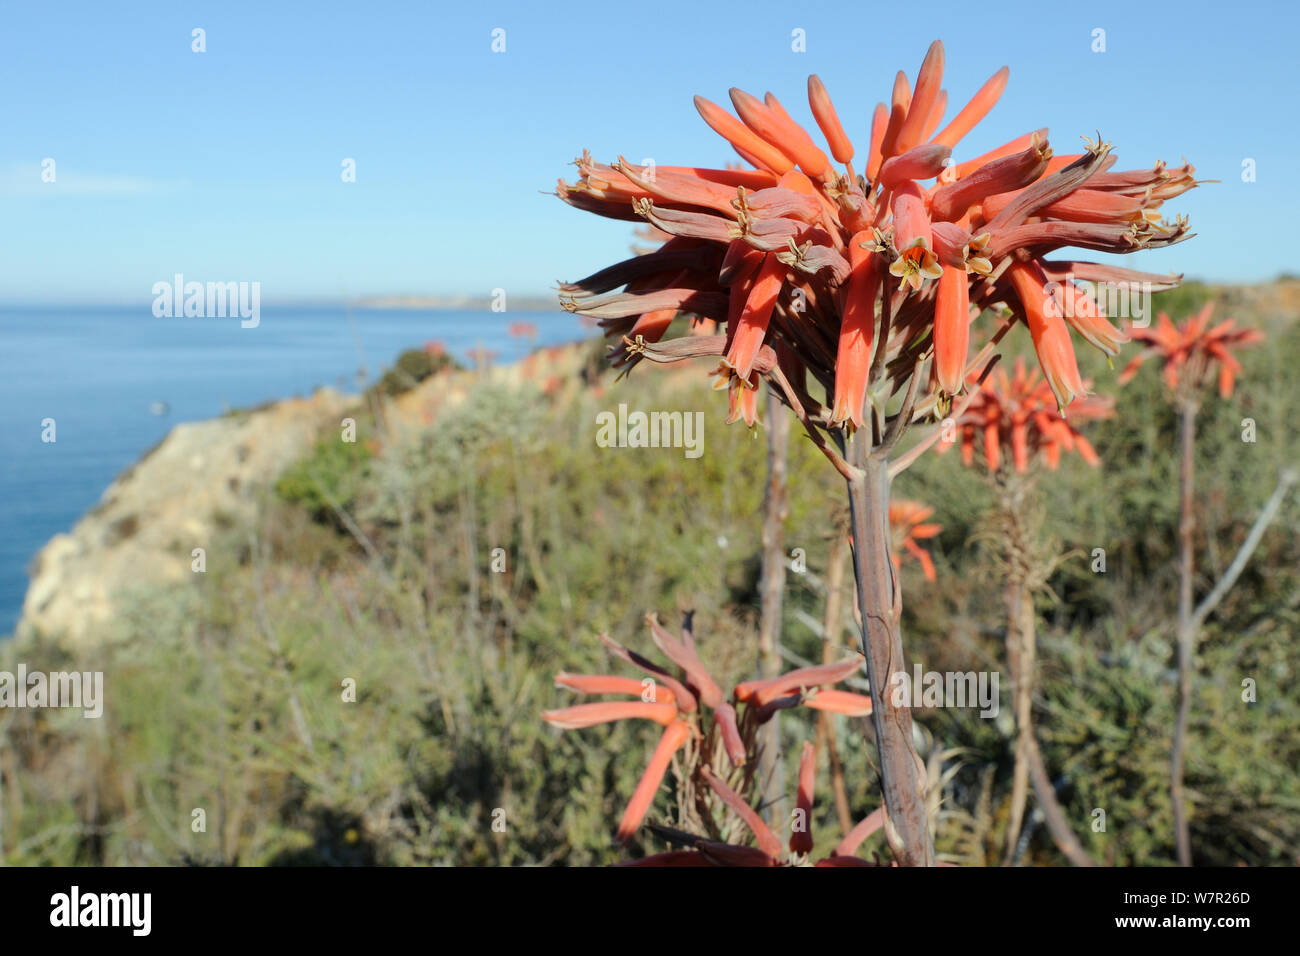 Savon Aloe (Aloe maculata / saponaria) floraison sur une falaise avec la mer en arrière-plan. Algarve, Portugal, juin. Banque D'Images